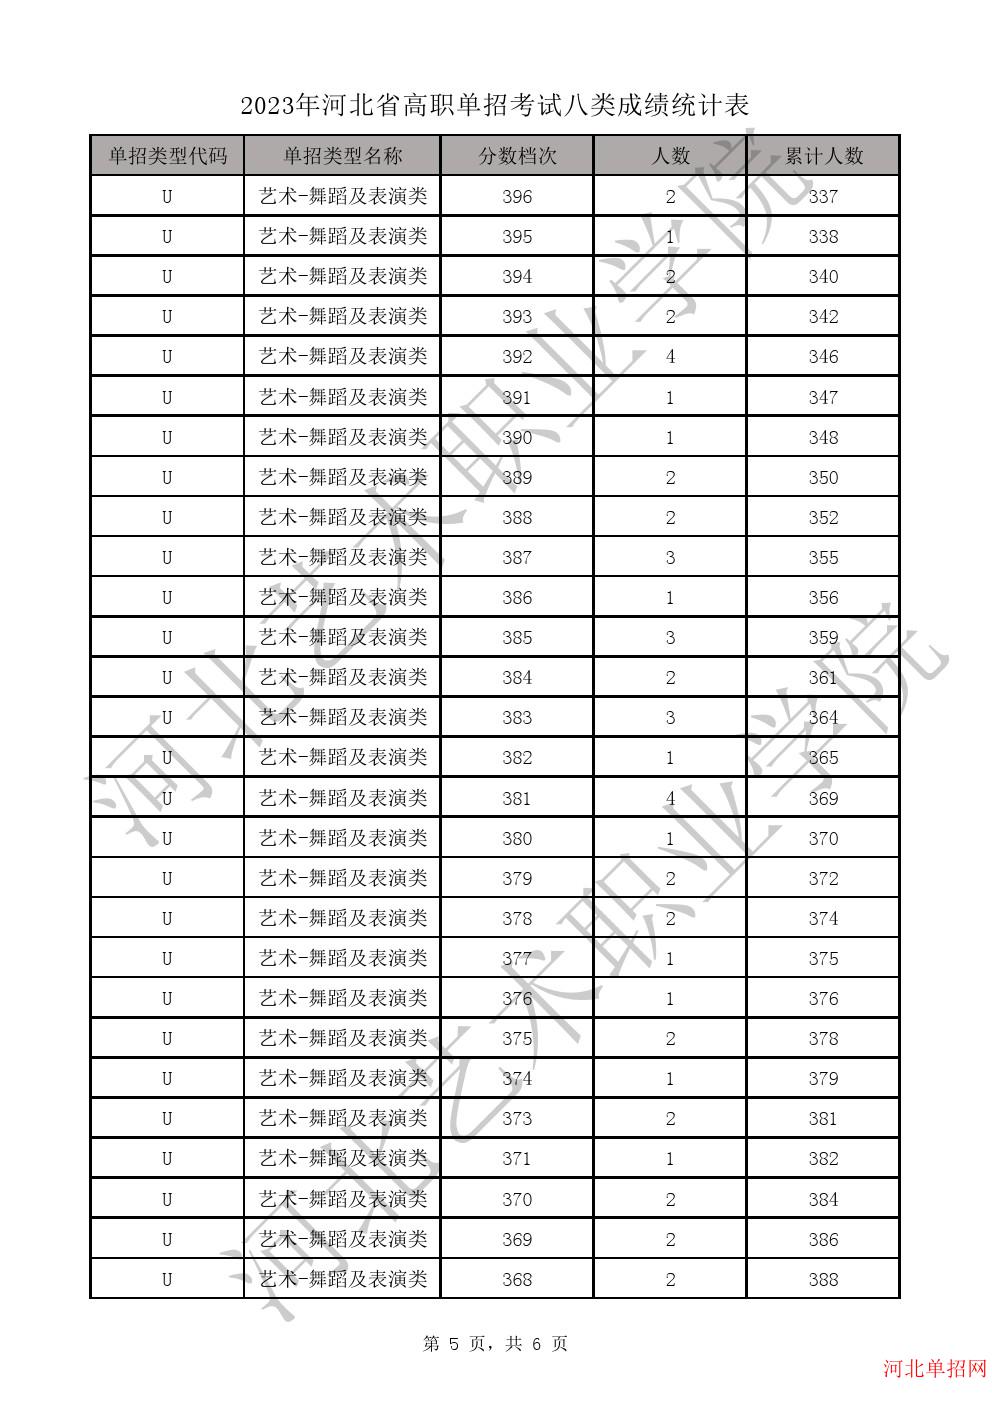 2023年河北省高职单招考试八类一分一档表-U艺术-舞蹈及表演类一分一档表 图5